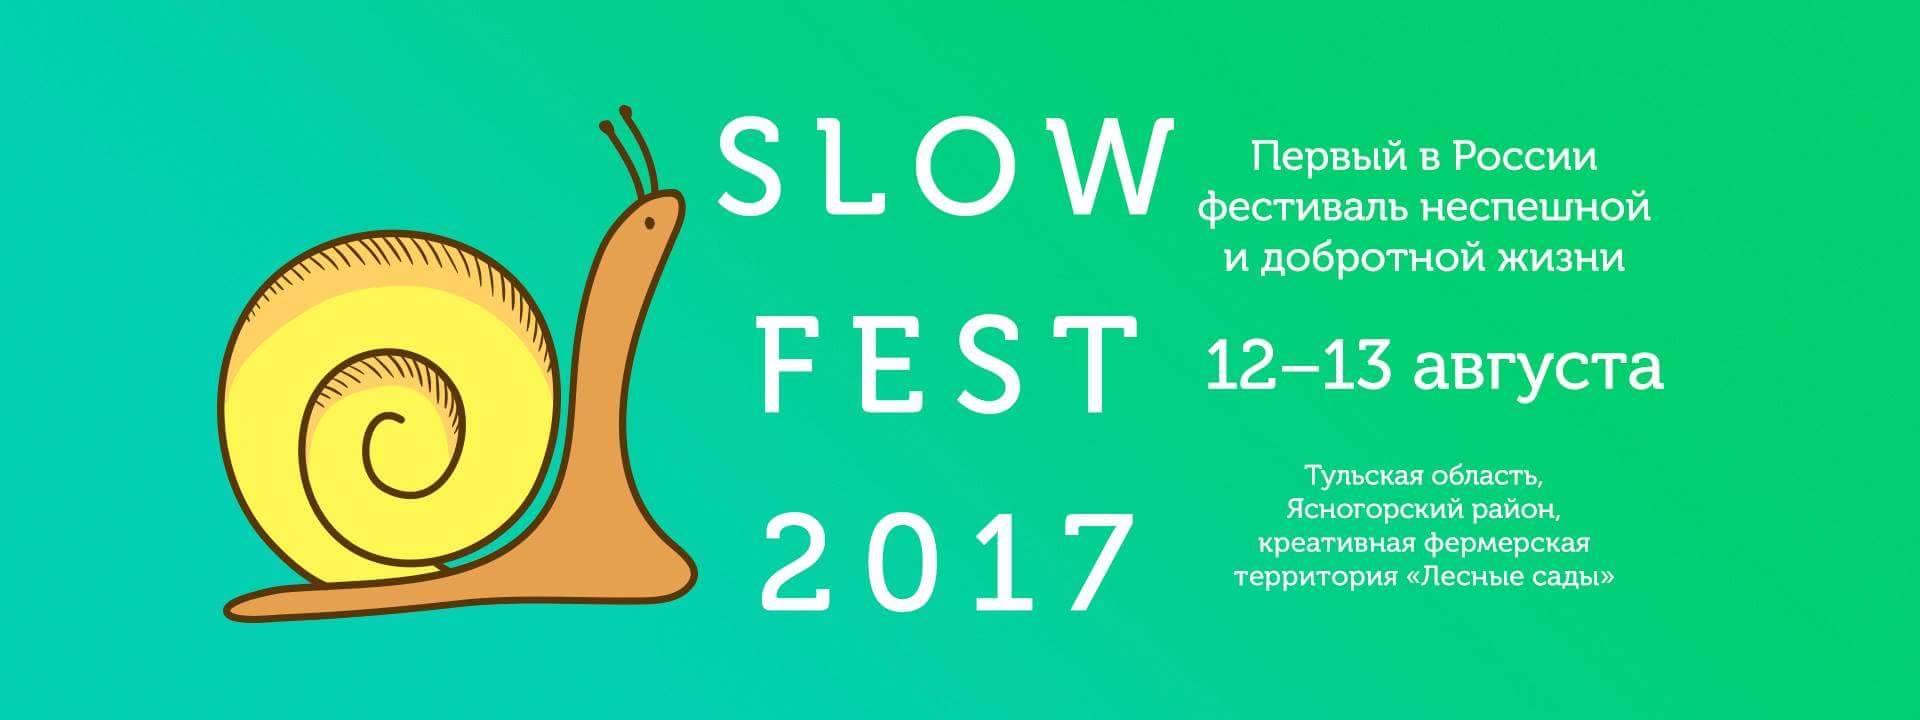 В Тульской области пройдет первый фестиваль неспешной жизни SLOW FEST. Изображение 1